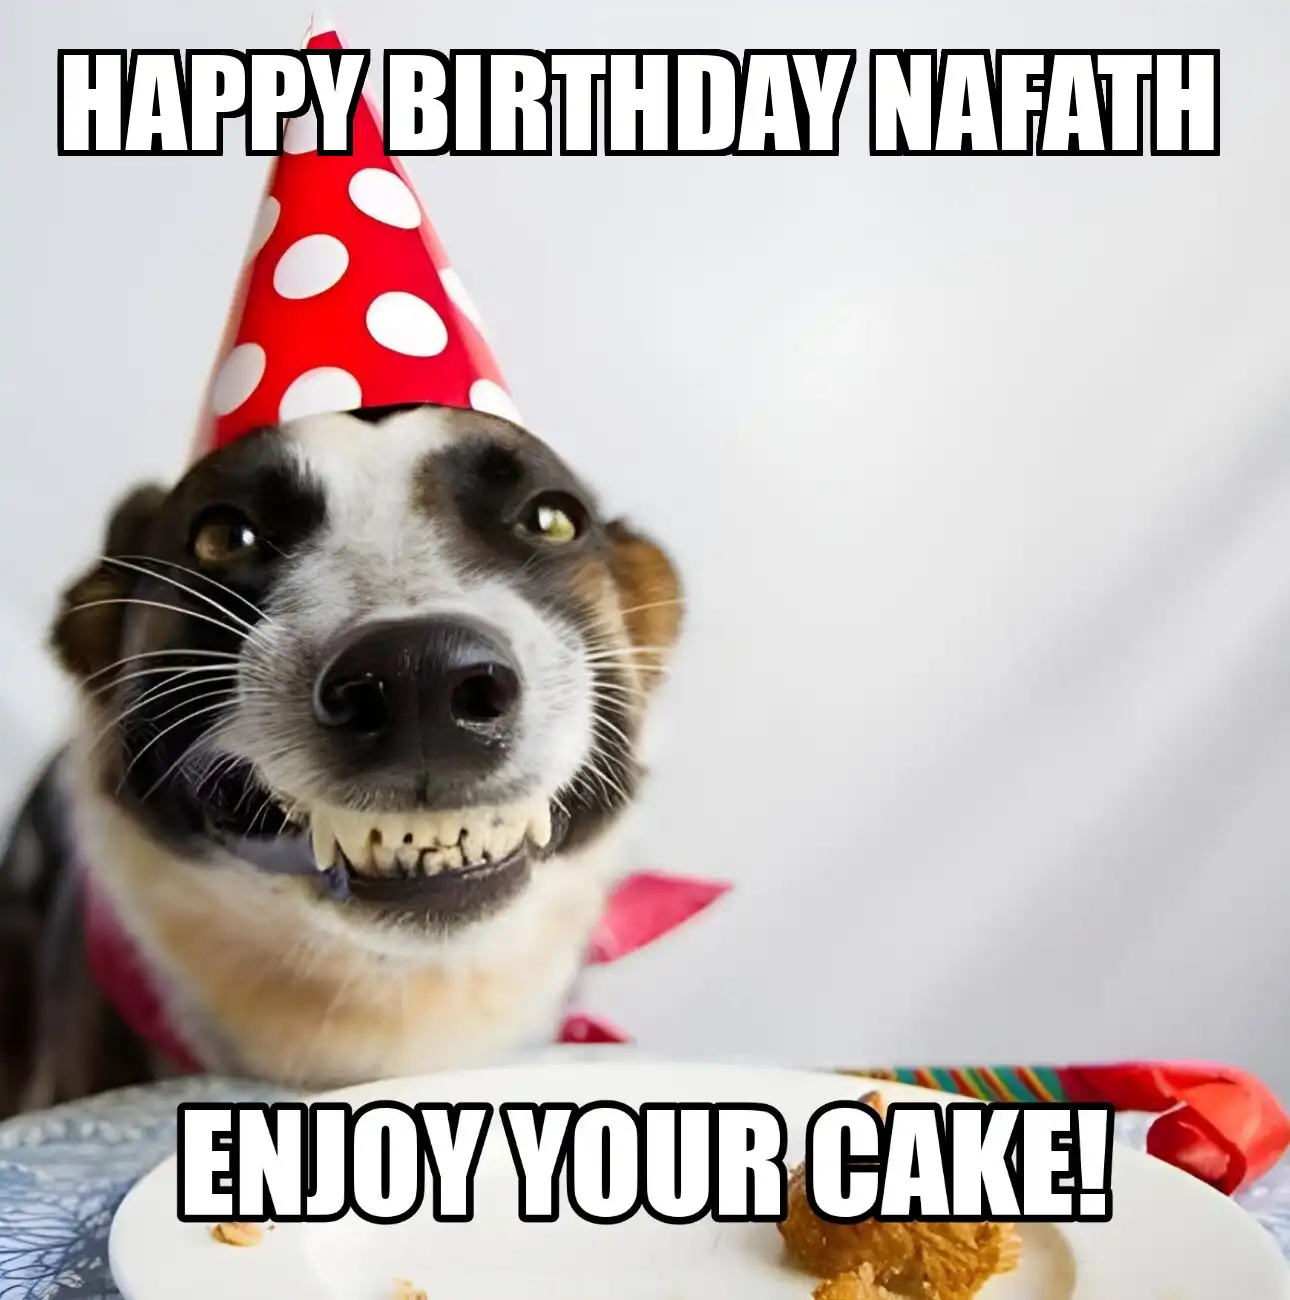 Happy Birthday Nafath Enjoy Your Cake Dog Meme